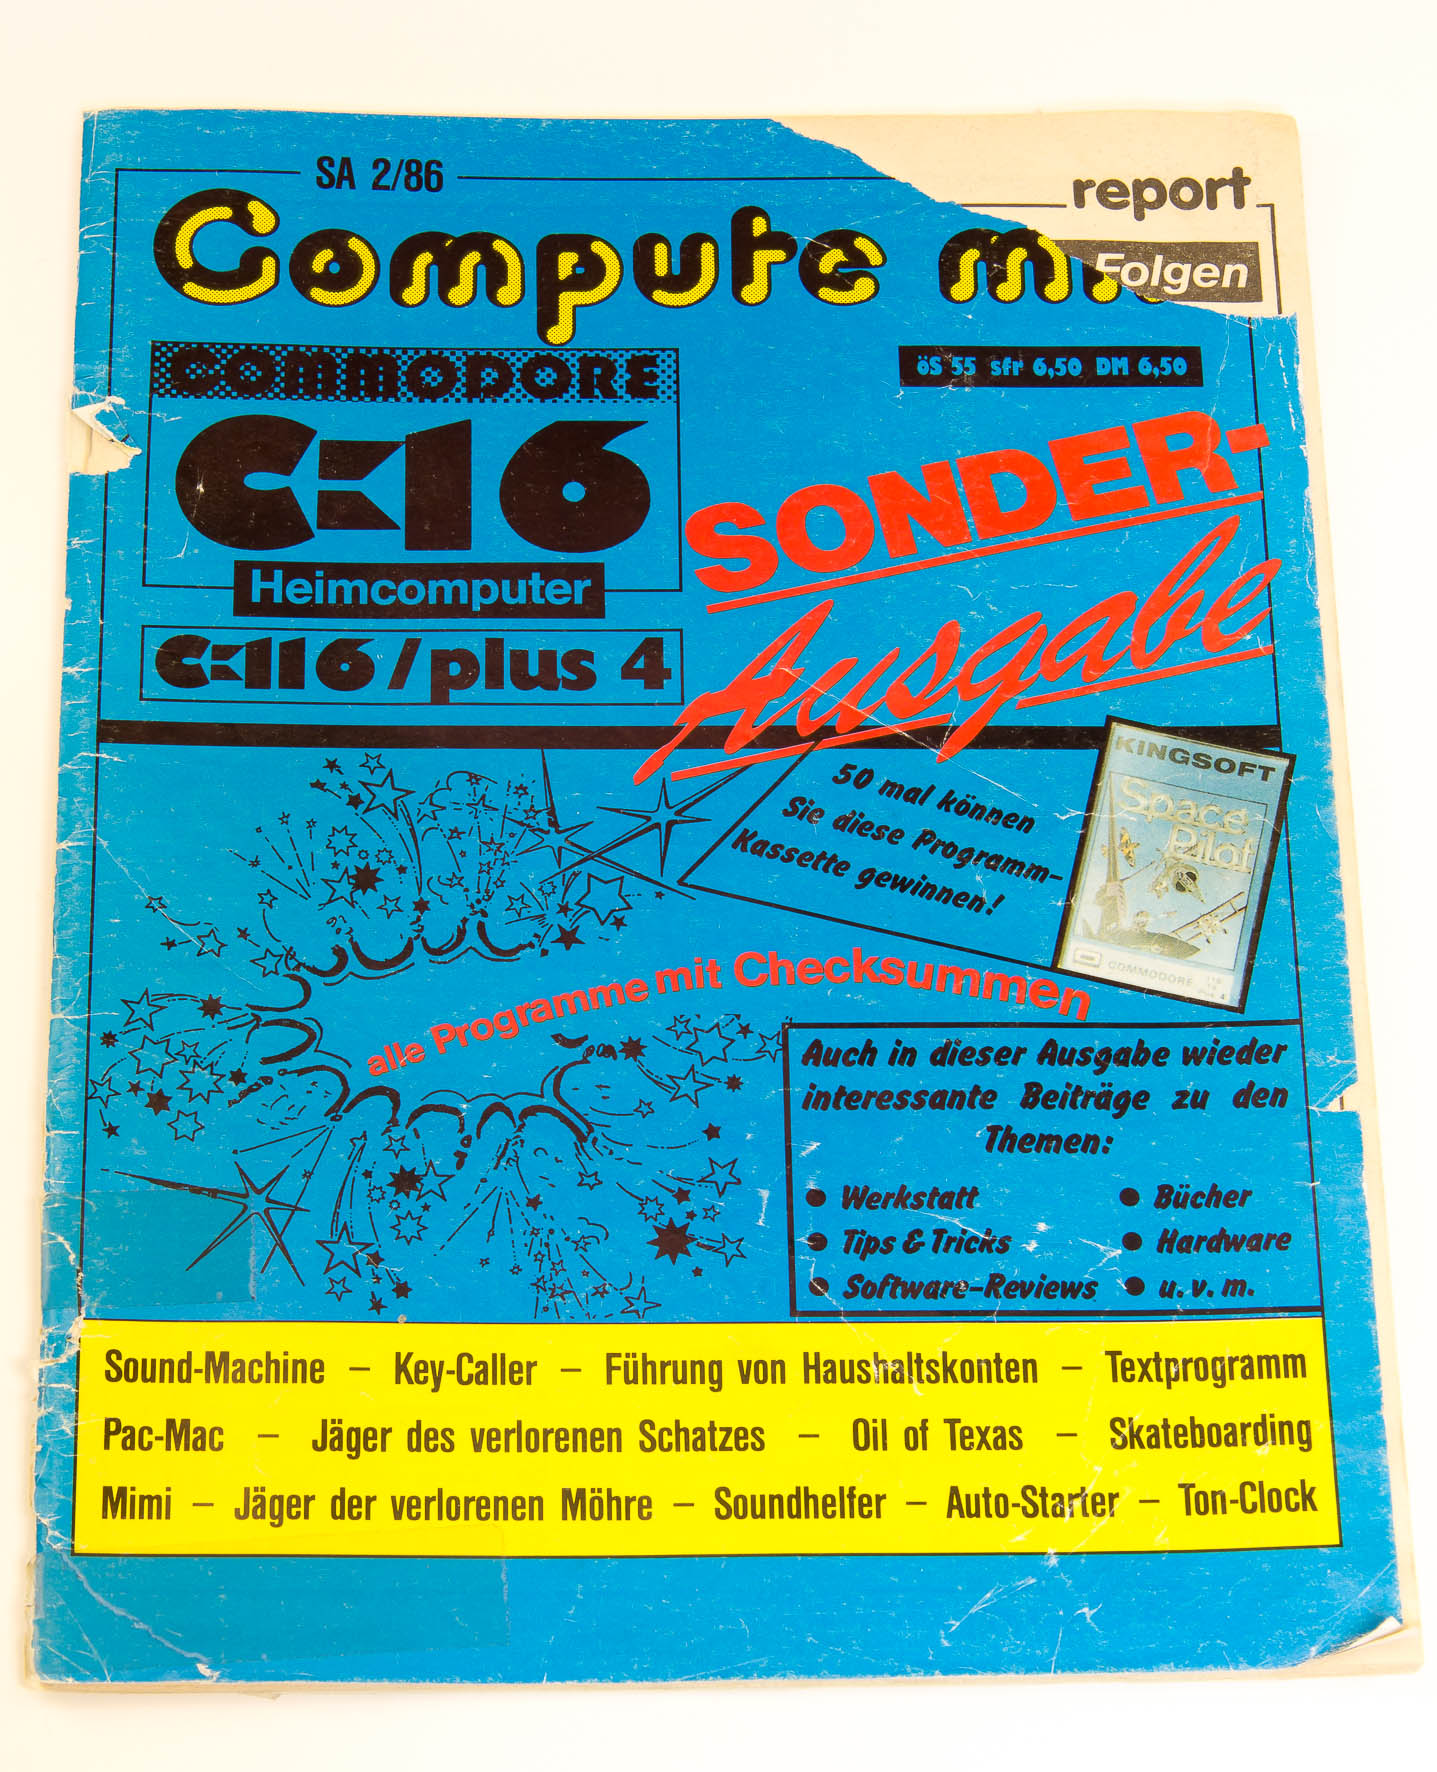 Die Heimcomputerzeitschrift Compute mit erschien ab 1984 im Roeske Verlag. Sie wurde 1985 vom Tronic-Verlag übernommen. (Bild: Claudio Lione)